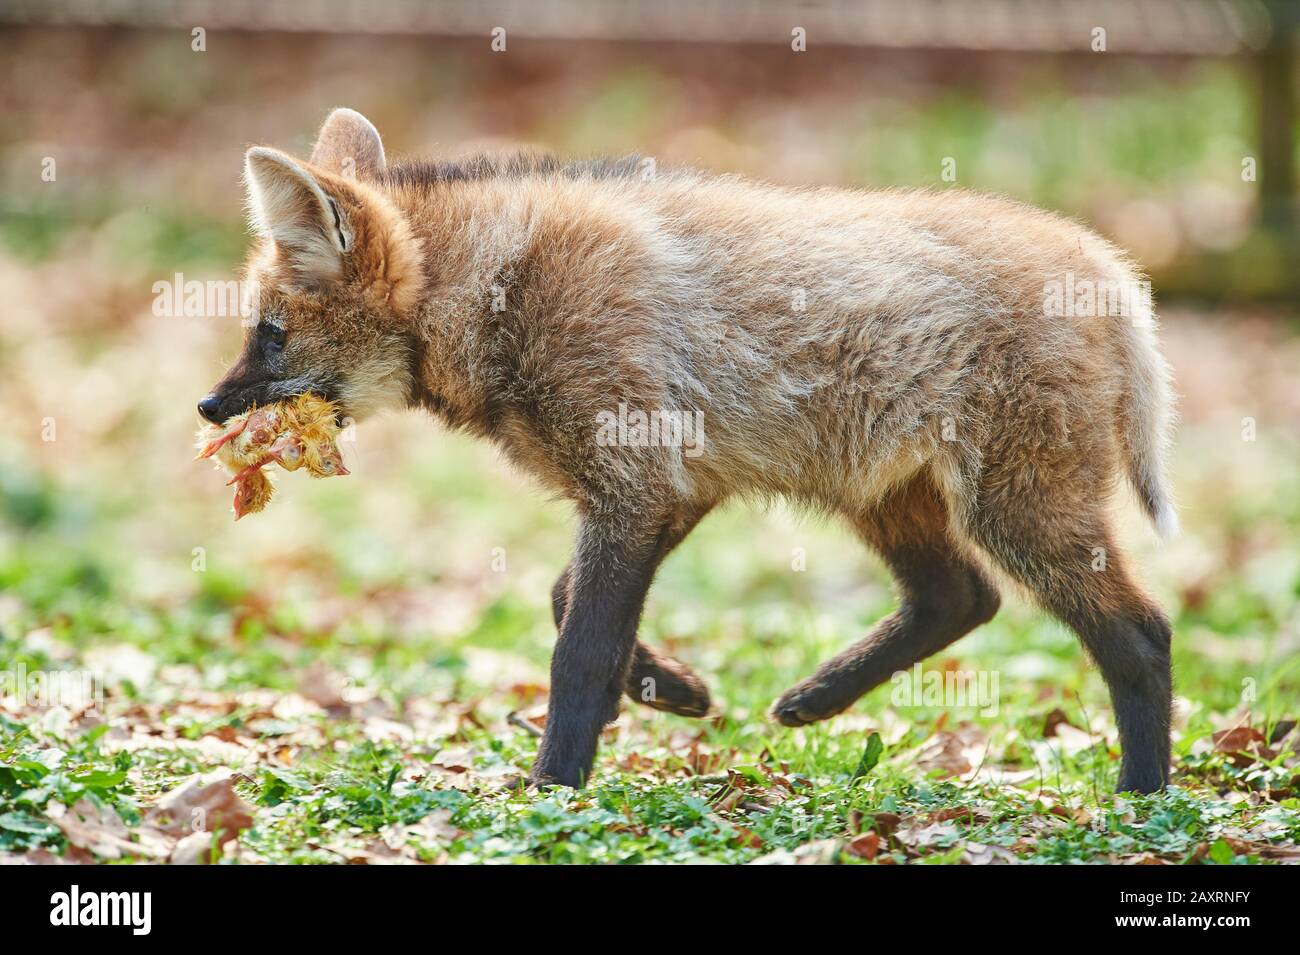 Maned wolf, Chrysocyon brachyurus, young, walking, sideways Stock Photo